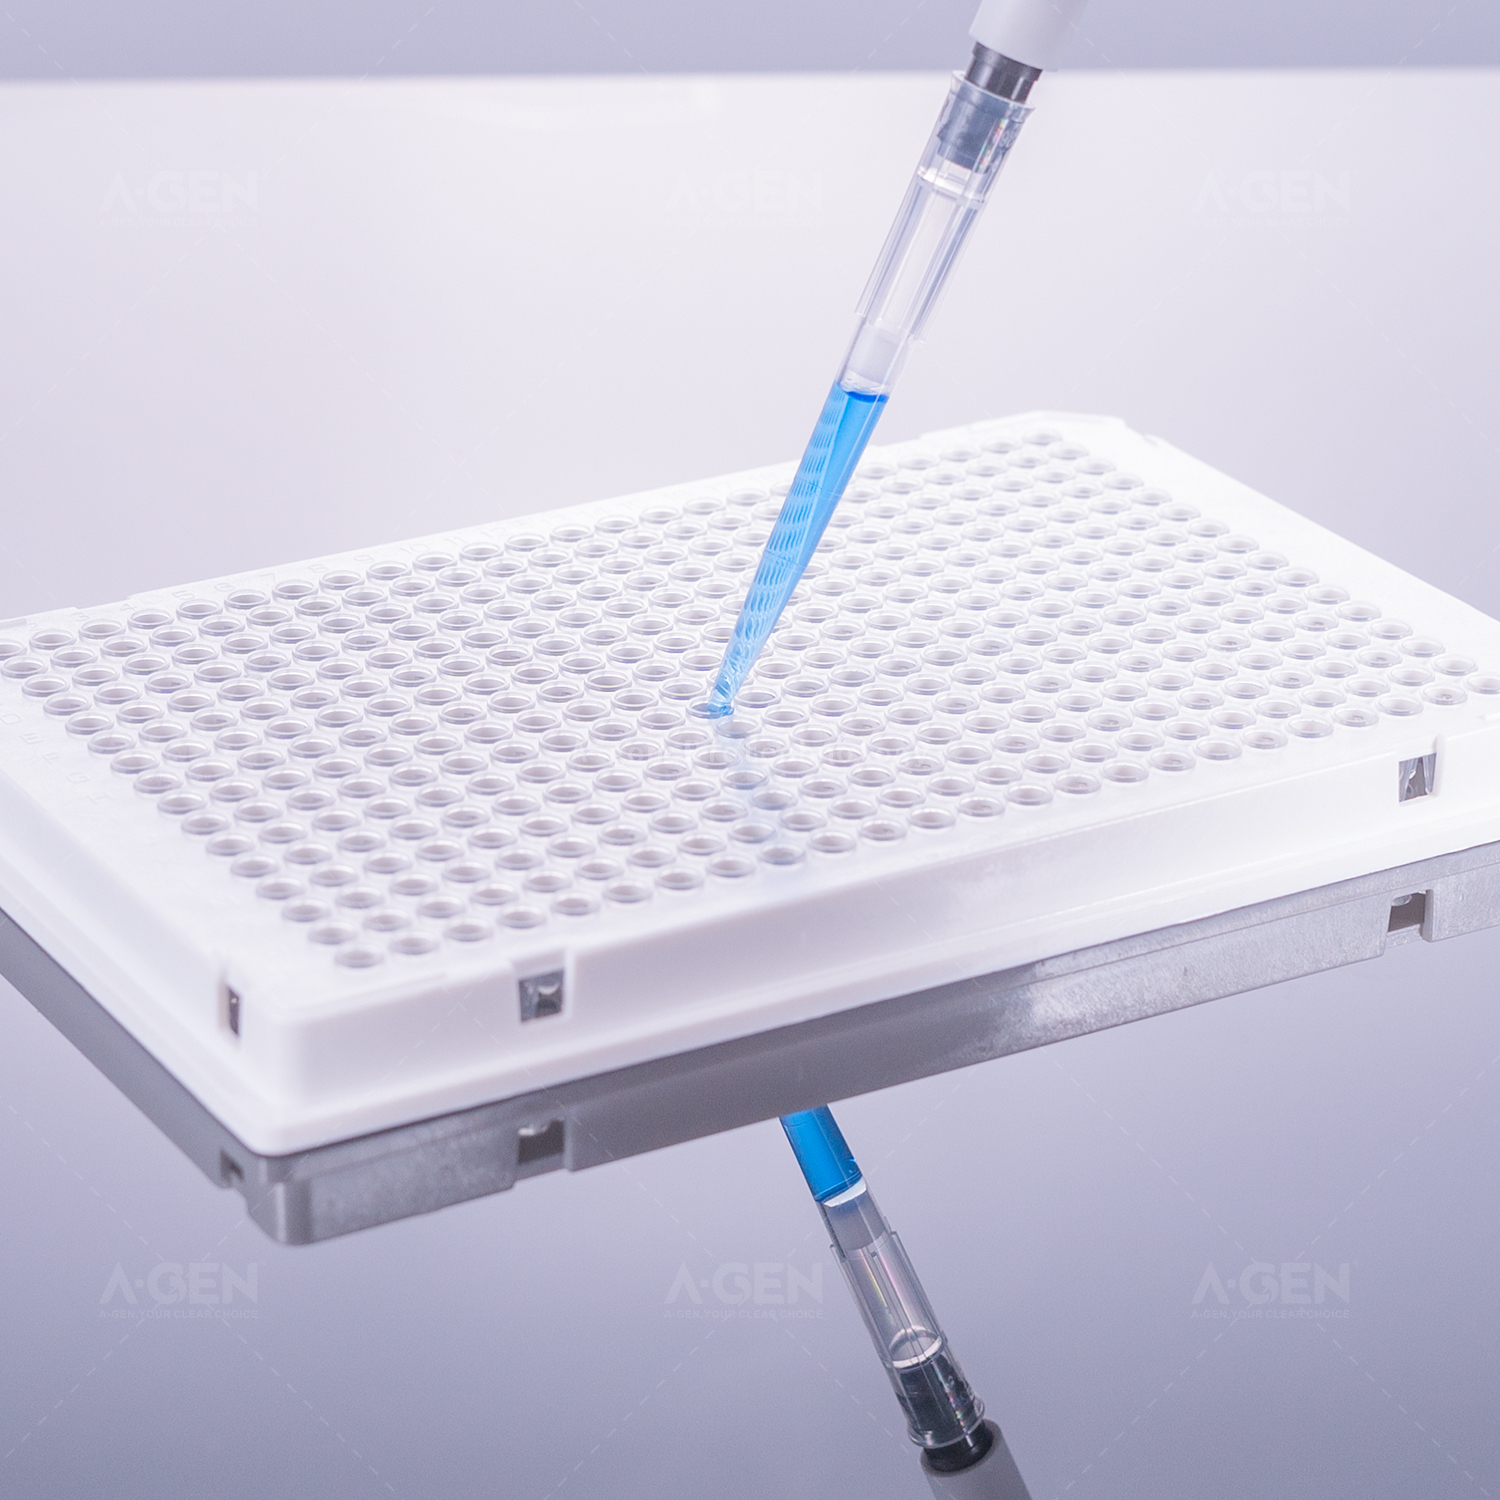 40μL，384孔PCR板，单角切，标记清晰，白框+透明管